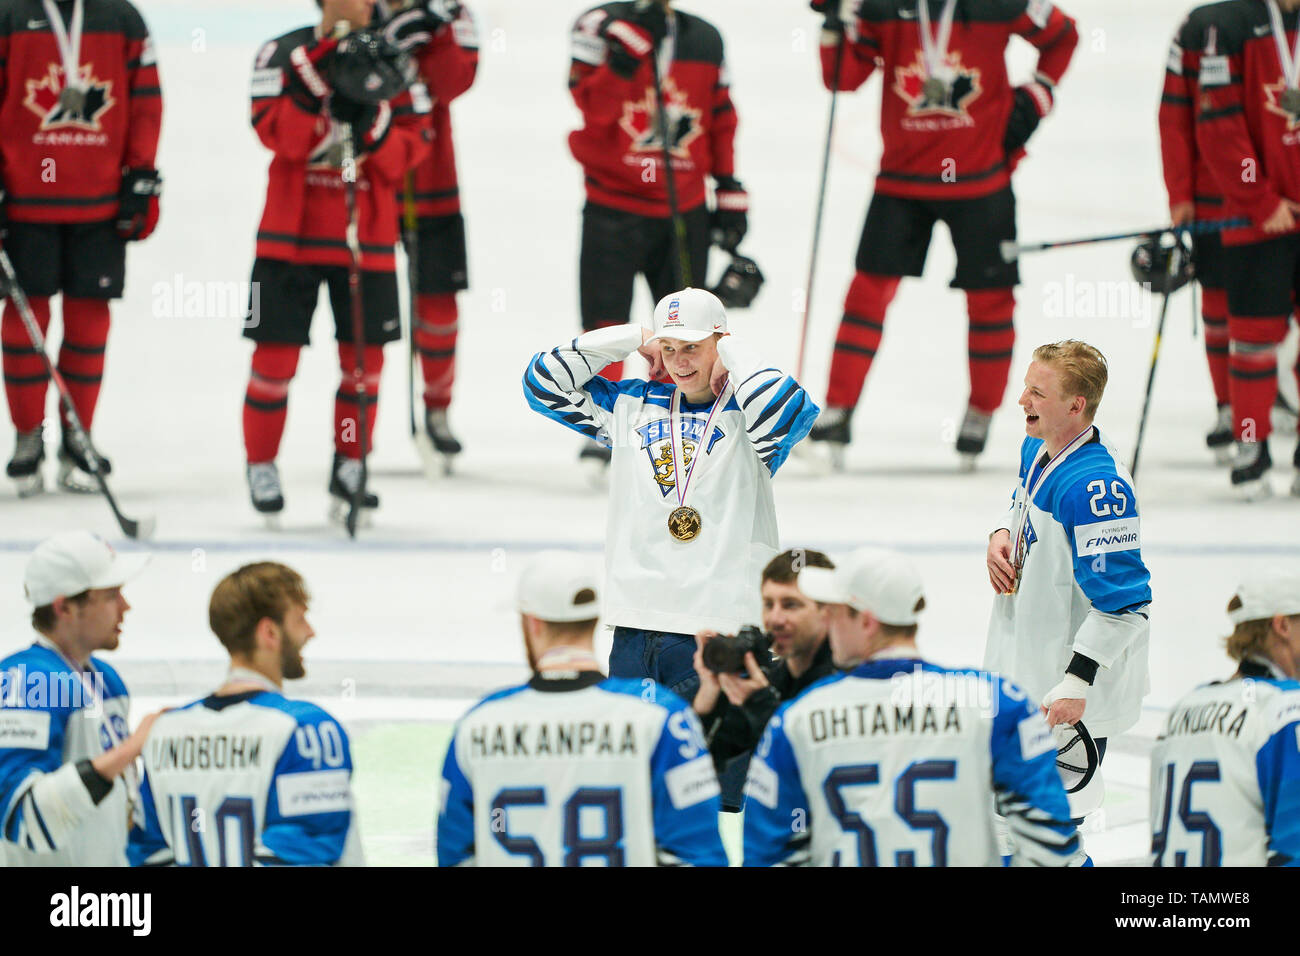 Bratislava, Slovacchia. 26 Maggio, 2019. La Finlandia ha vinto il titolo e celebrare, tifo, gioia, emozioni, celebrando, ridere, tifo, rallegratevi, sistemando i bracci, stringendo il pugno, celebrare, celebrazione Torjubel, Kaapo KAKKO, aletta 24, Toni RAJALA, FIN 25 CANADA - FINLANDIA 1-3 Kanada - Finnland FINAL IIHF Hockey su ghiaccio ai campionati mondiali di Bratislava, Slovacchia, Slowakei, 26 maggio 2019, STAGIONE 2018/2019, Credito: Peter Schatz/Alamy Live News Foto Stock